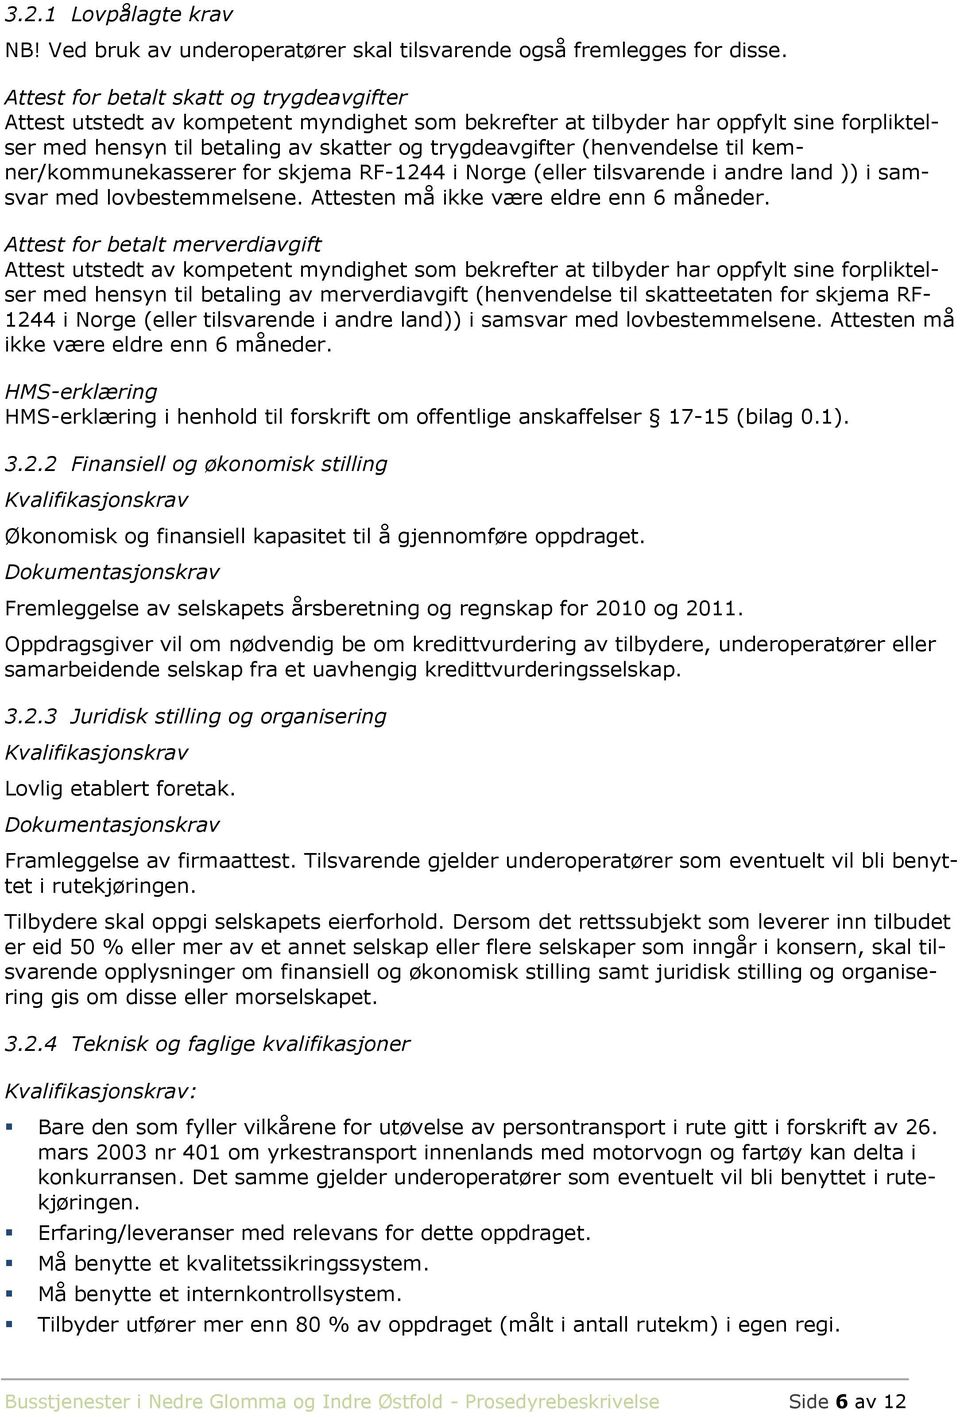 (henvendelse til kemner/kommunekasserer for skjema RF-1244 i Norge (eller tilsvarende i andre land )) i samsvar med lovbestemmelsene. Attesten må ikke være eldre enn 6 måneder.